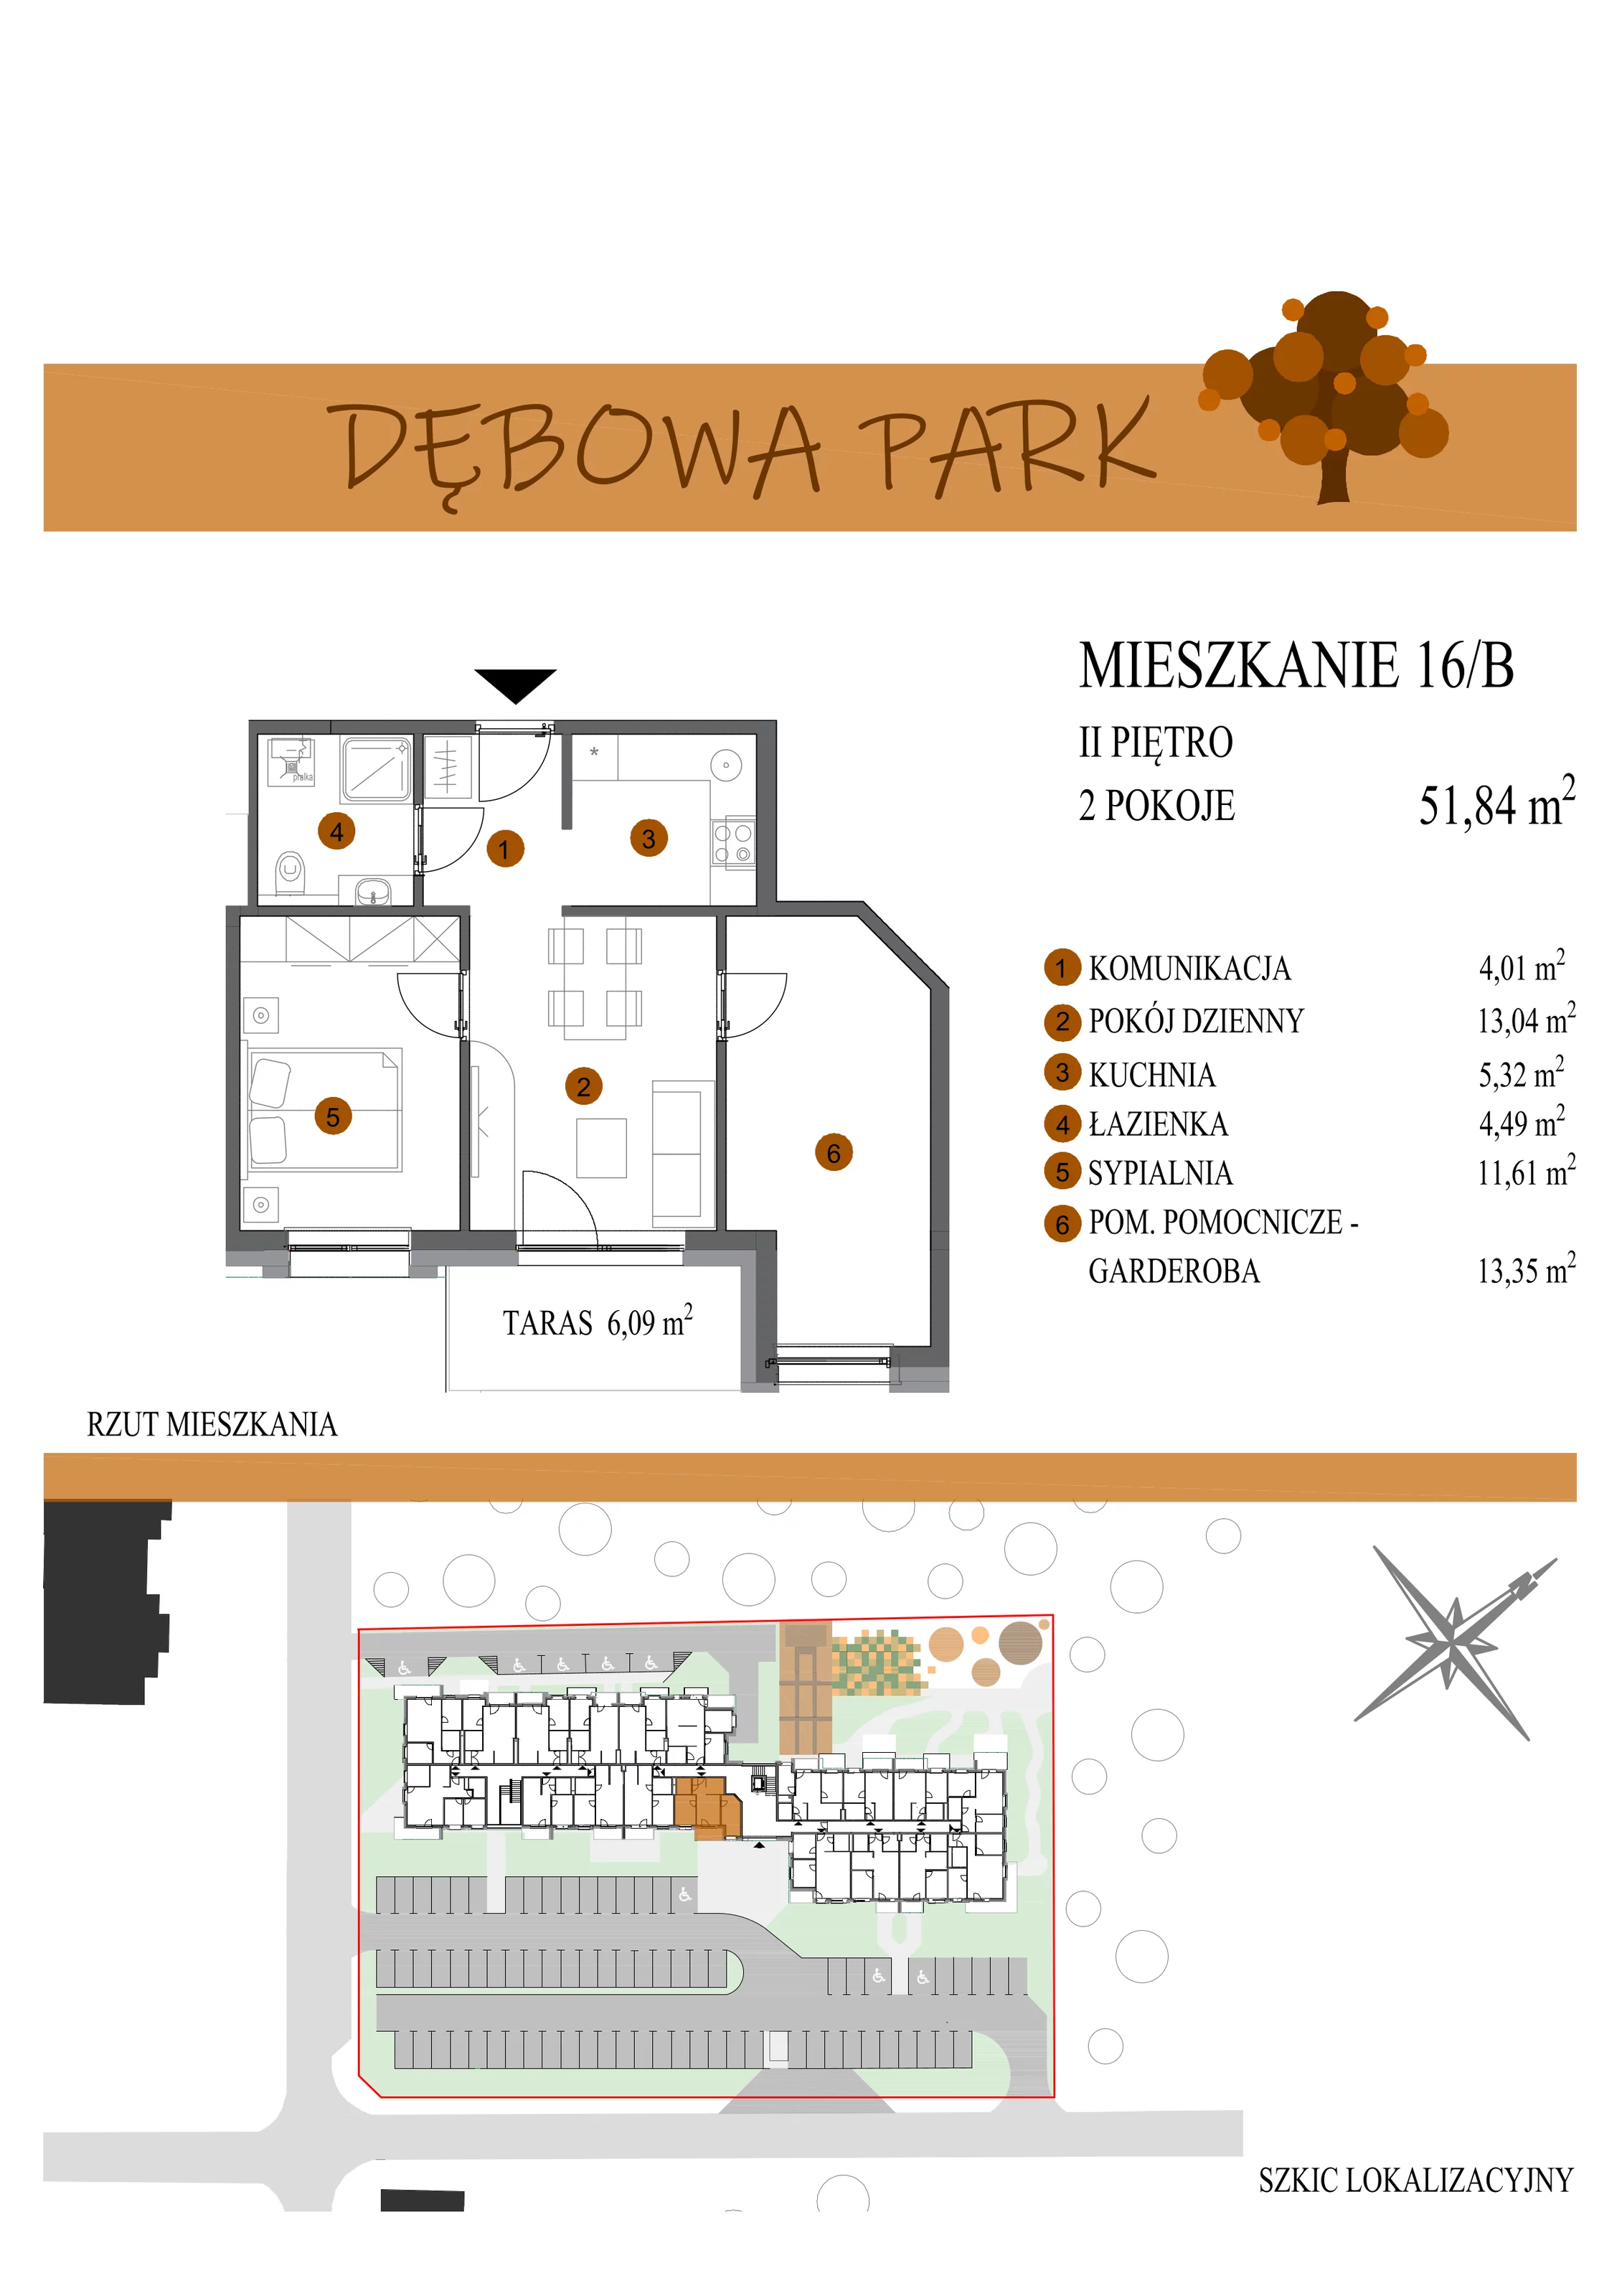 Mieszkanie 51,84 m², piętro 2, oferta nr 16B, Dębowa Park, Gogolin, ul. Dębowa